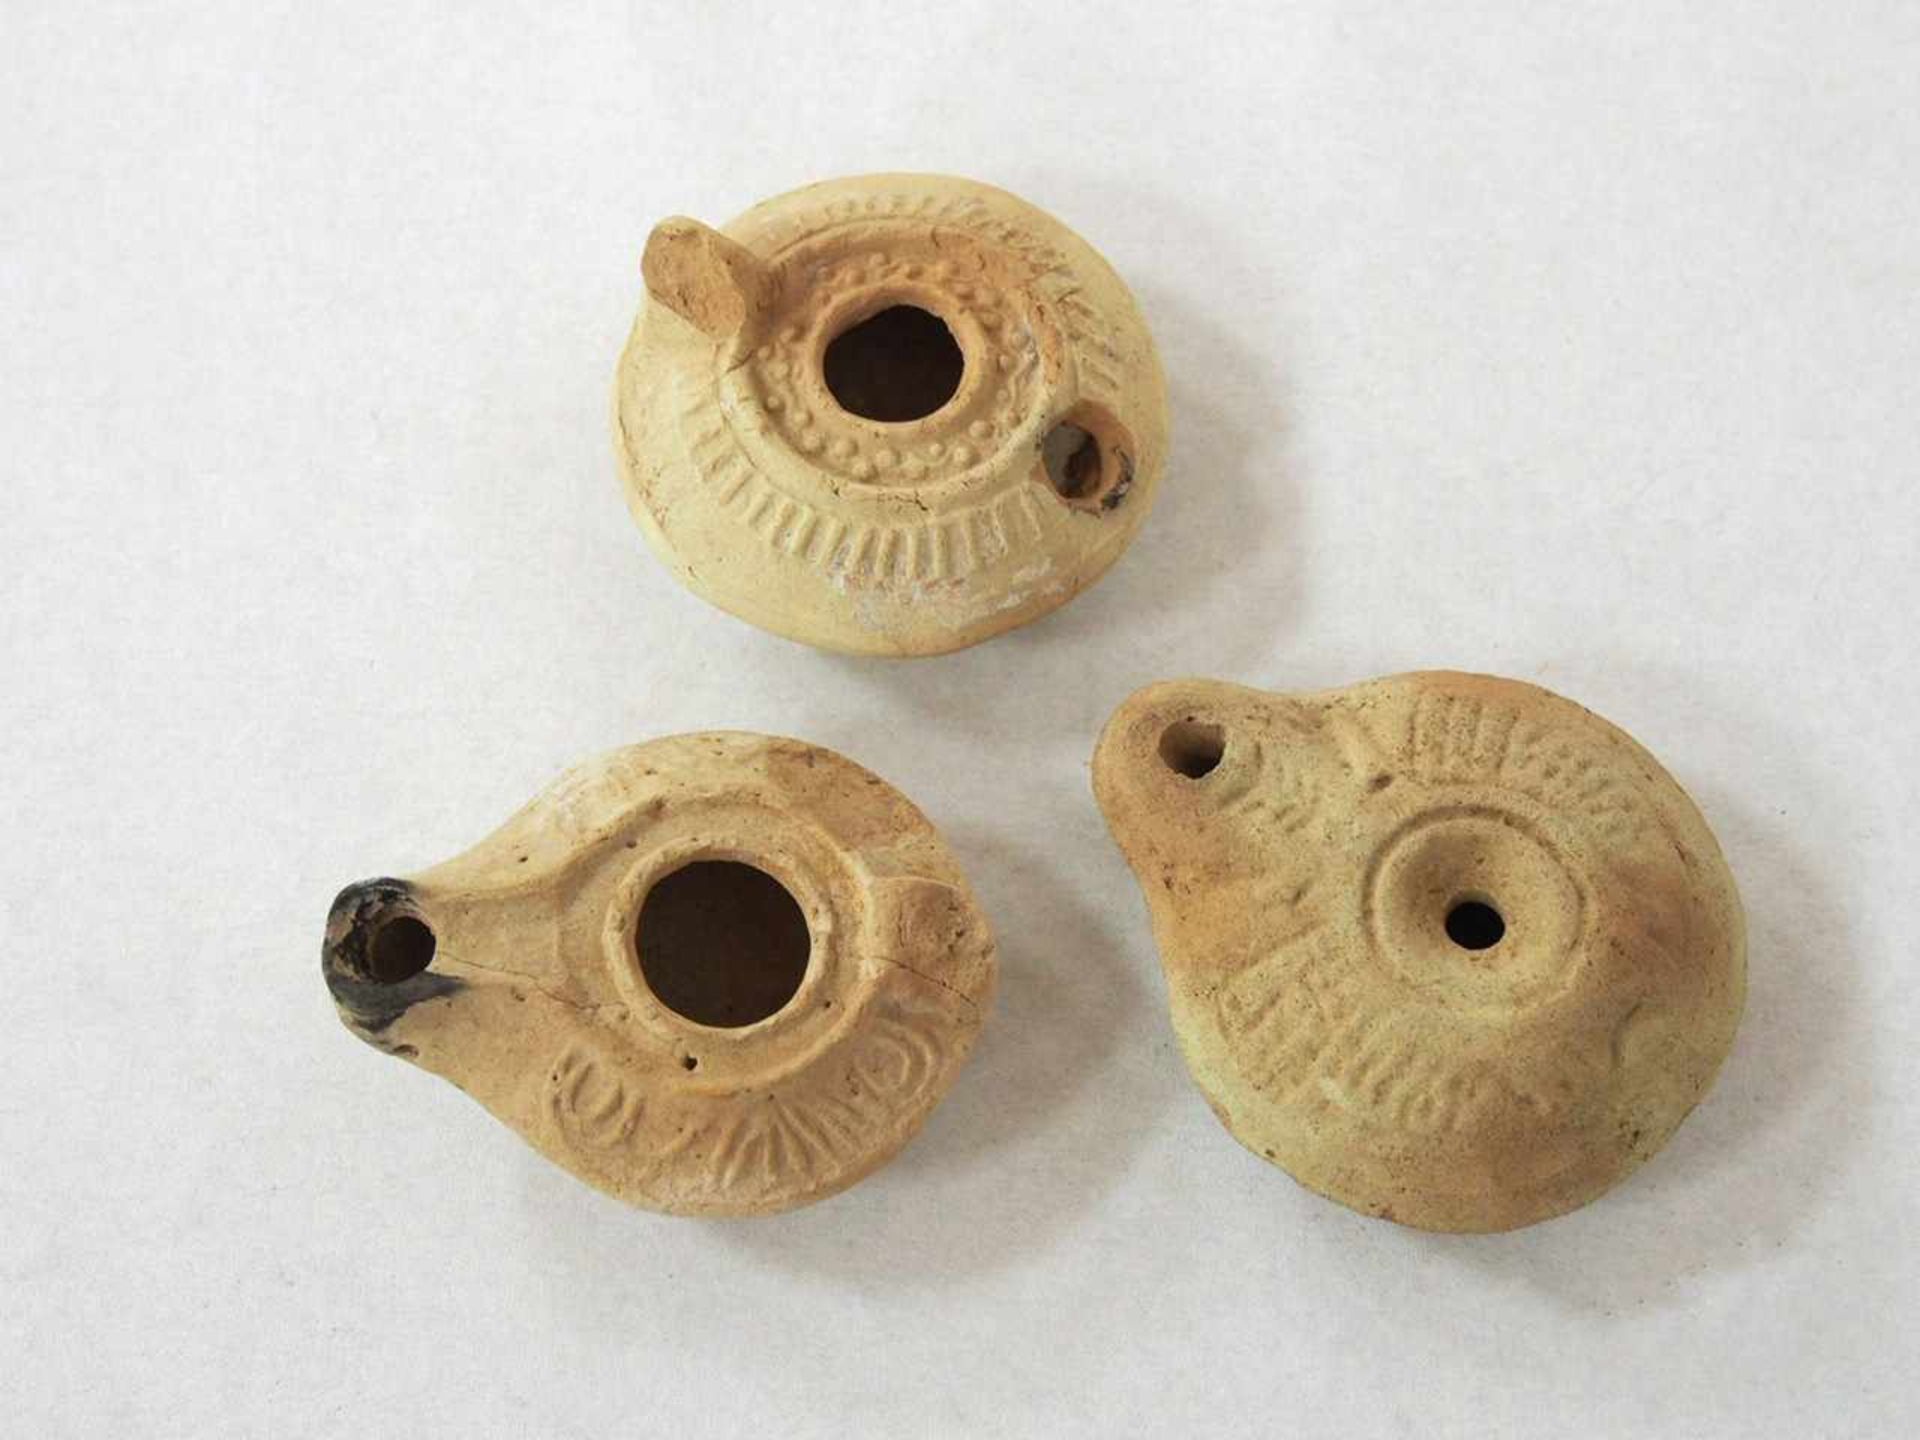 Drei ÖllampenFroschlampe, Ton, Ägypten 4.-5. Jh. n. Chr.; 2 Öllampen, Römisch, Östlicher